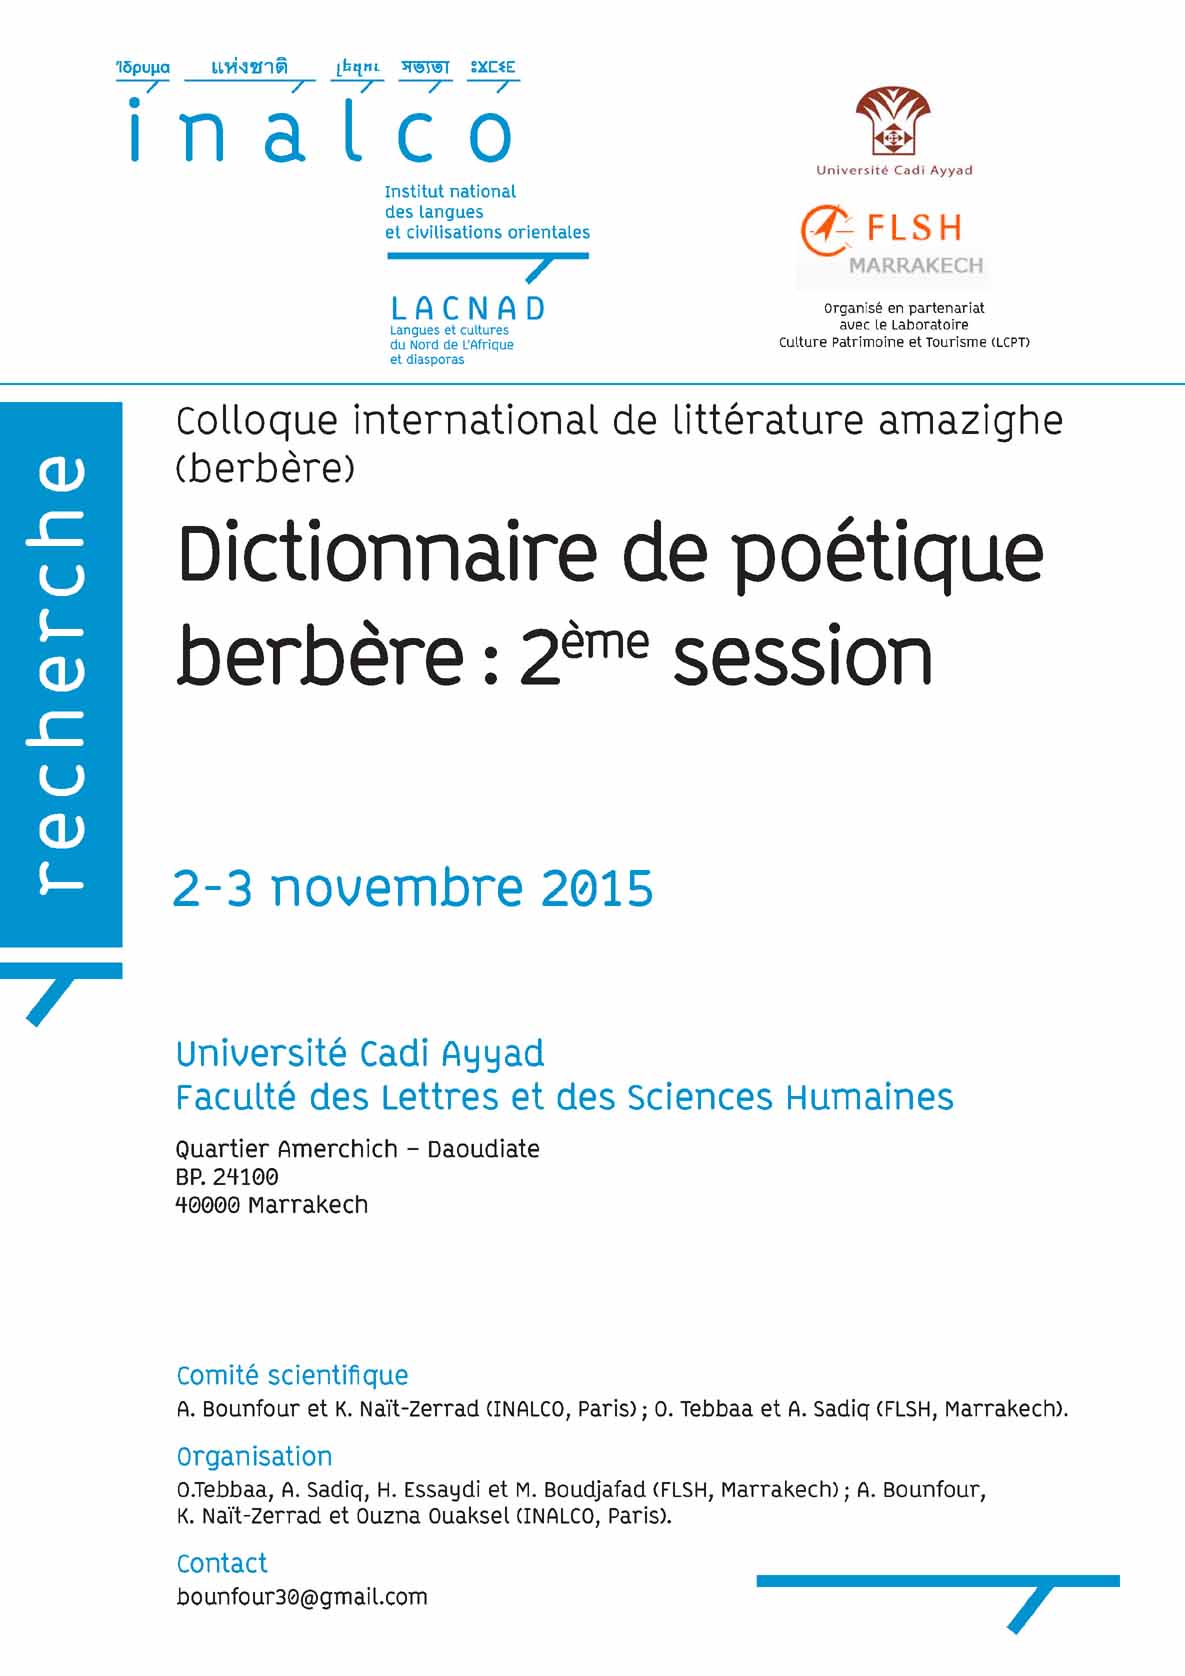 tl_files/doc-pdf/Dictionnaire Poetique 2015/affiche 2-3 novembre marrakech_1.jpg